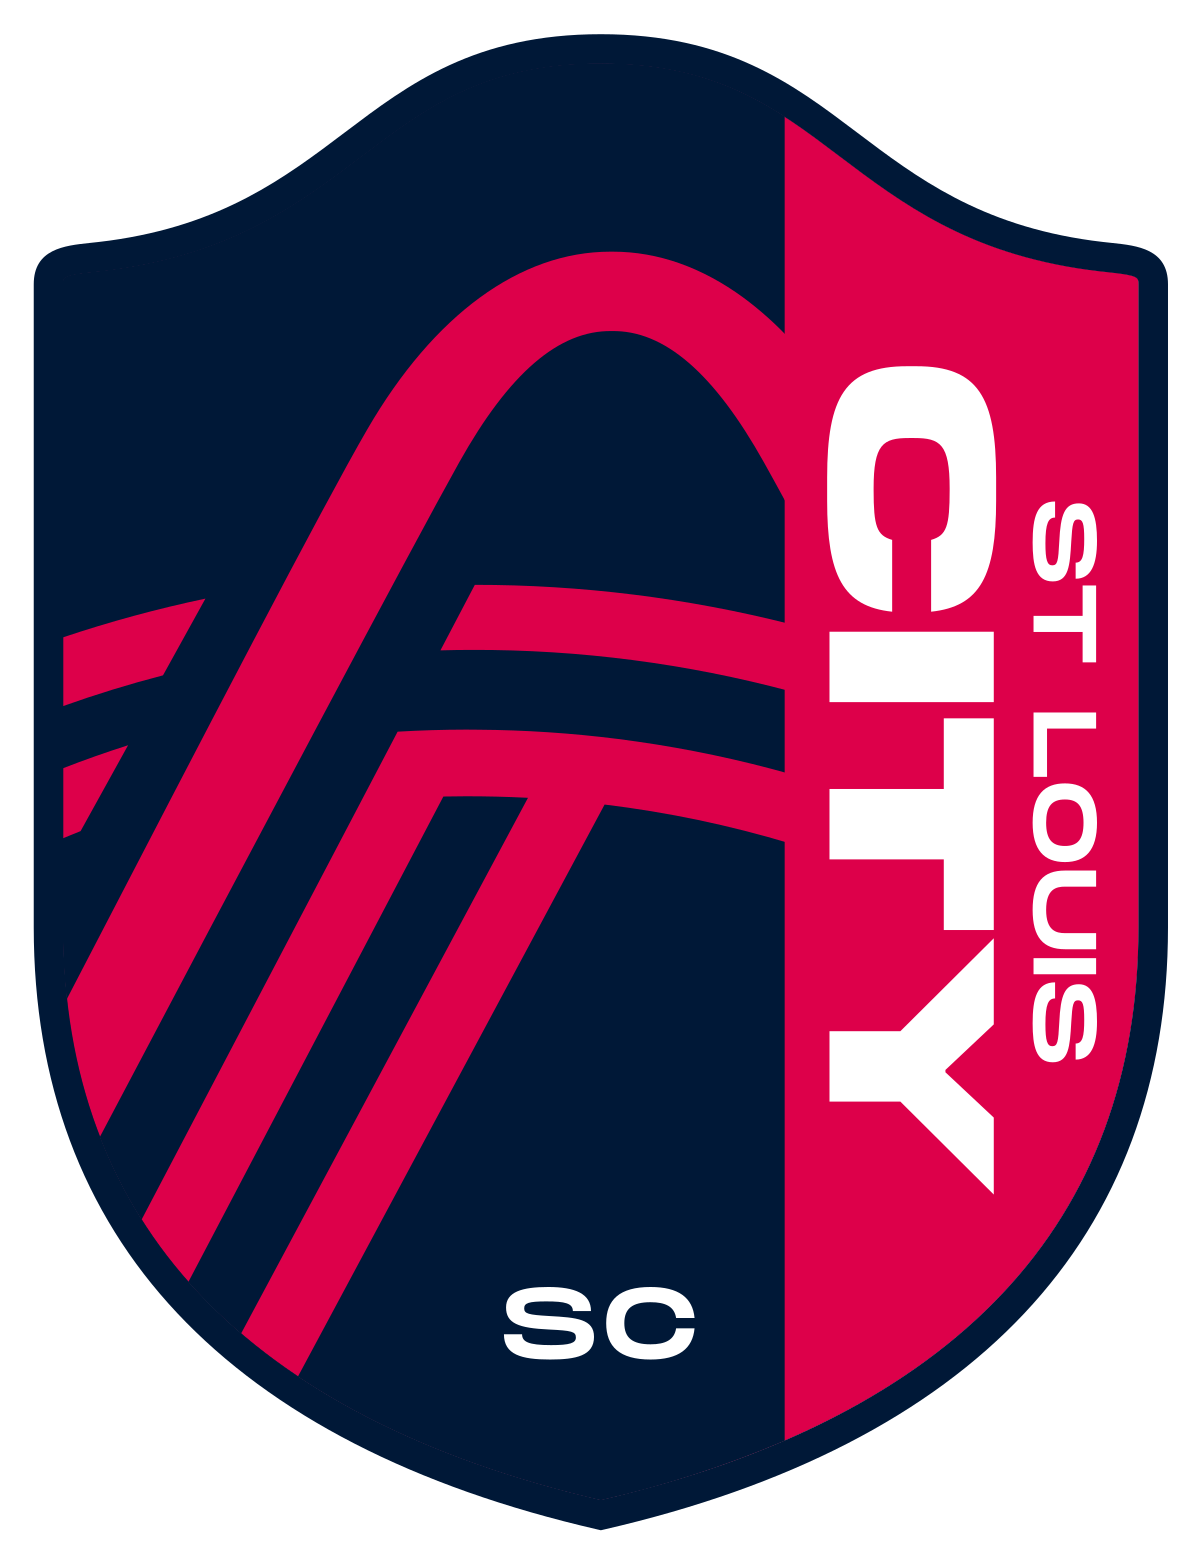 St. Louis City-2 logo